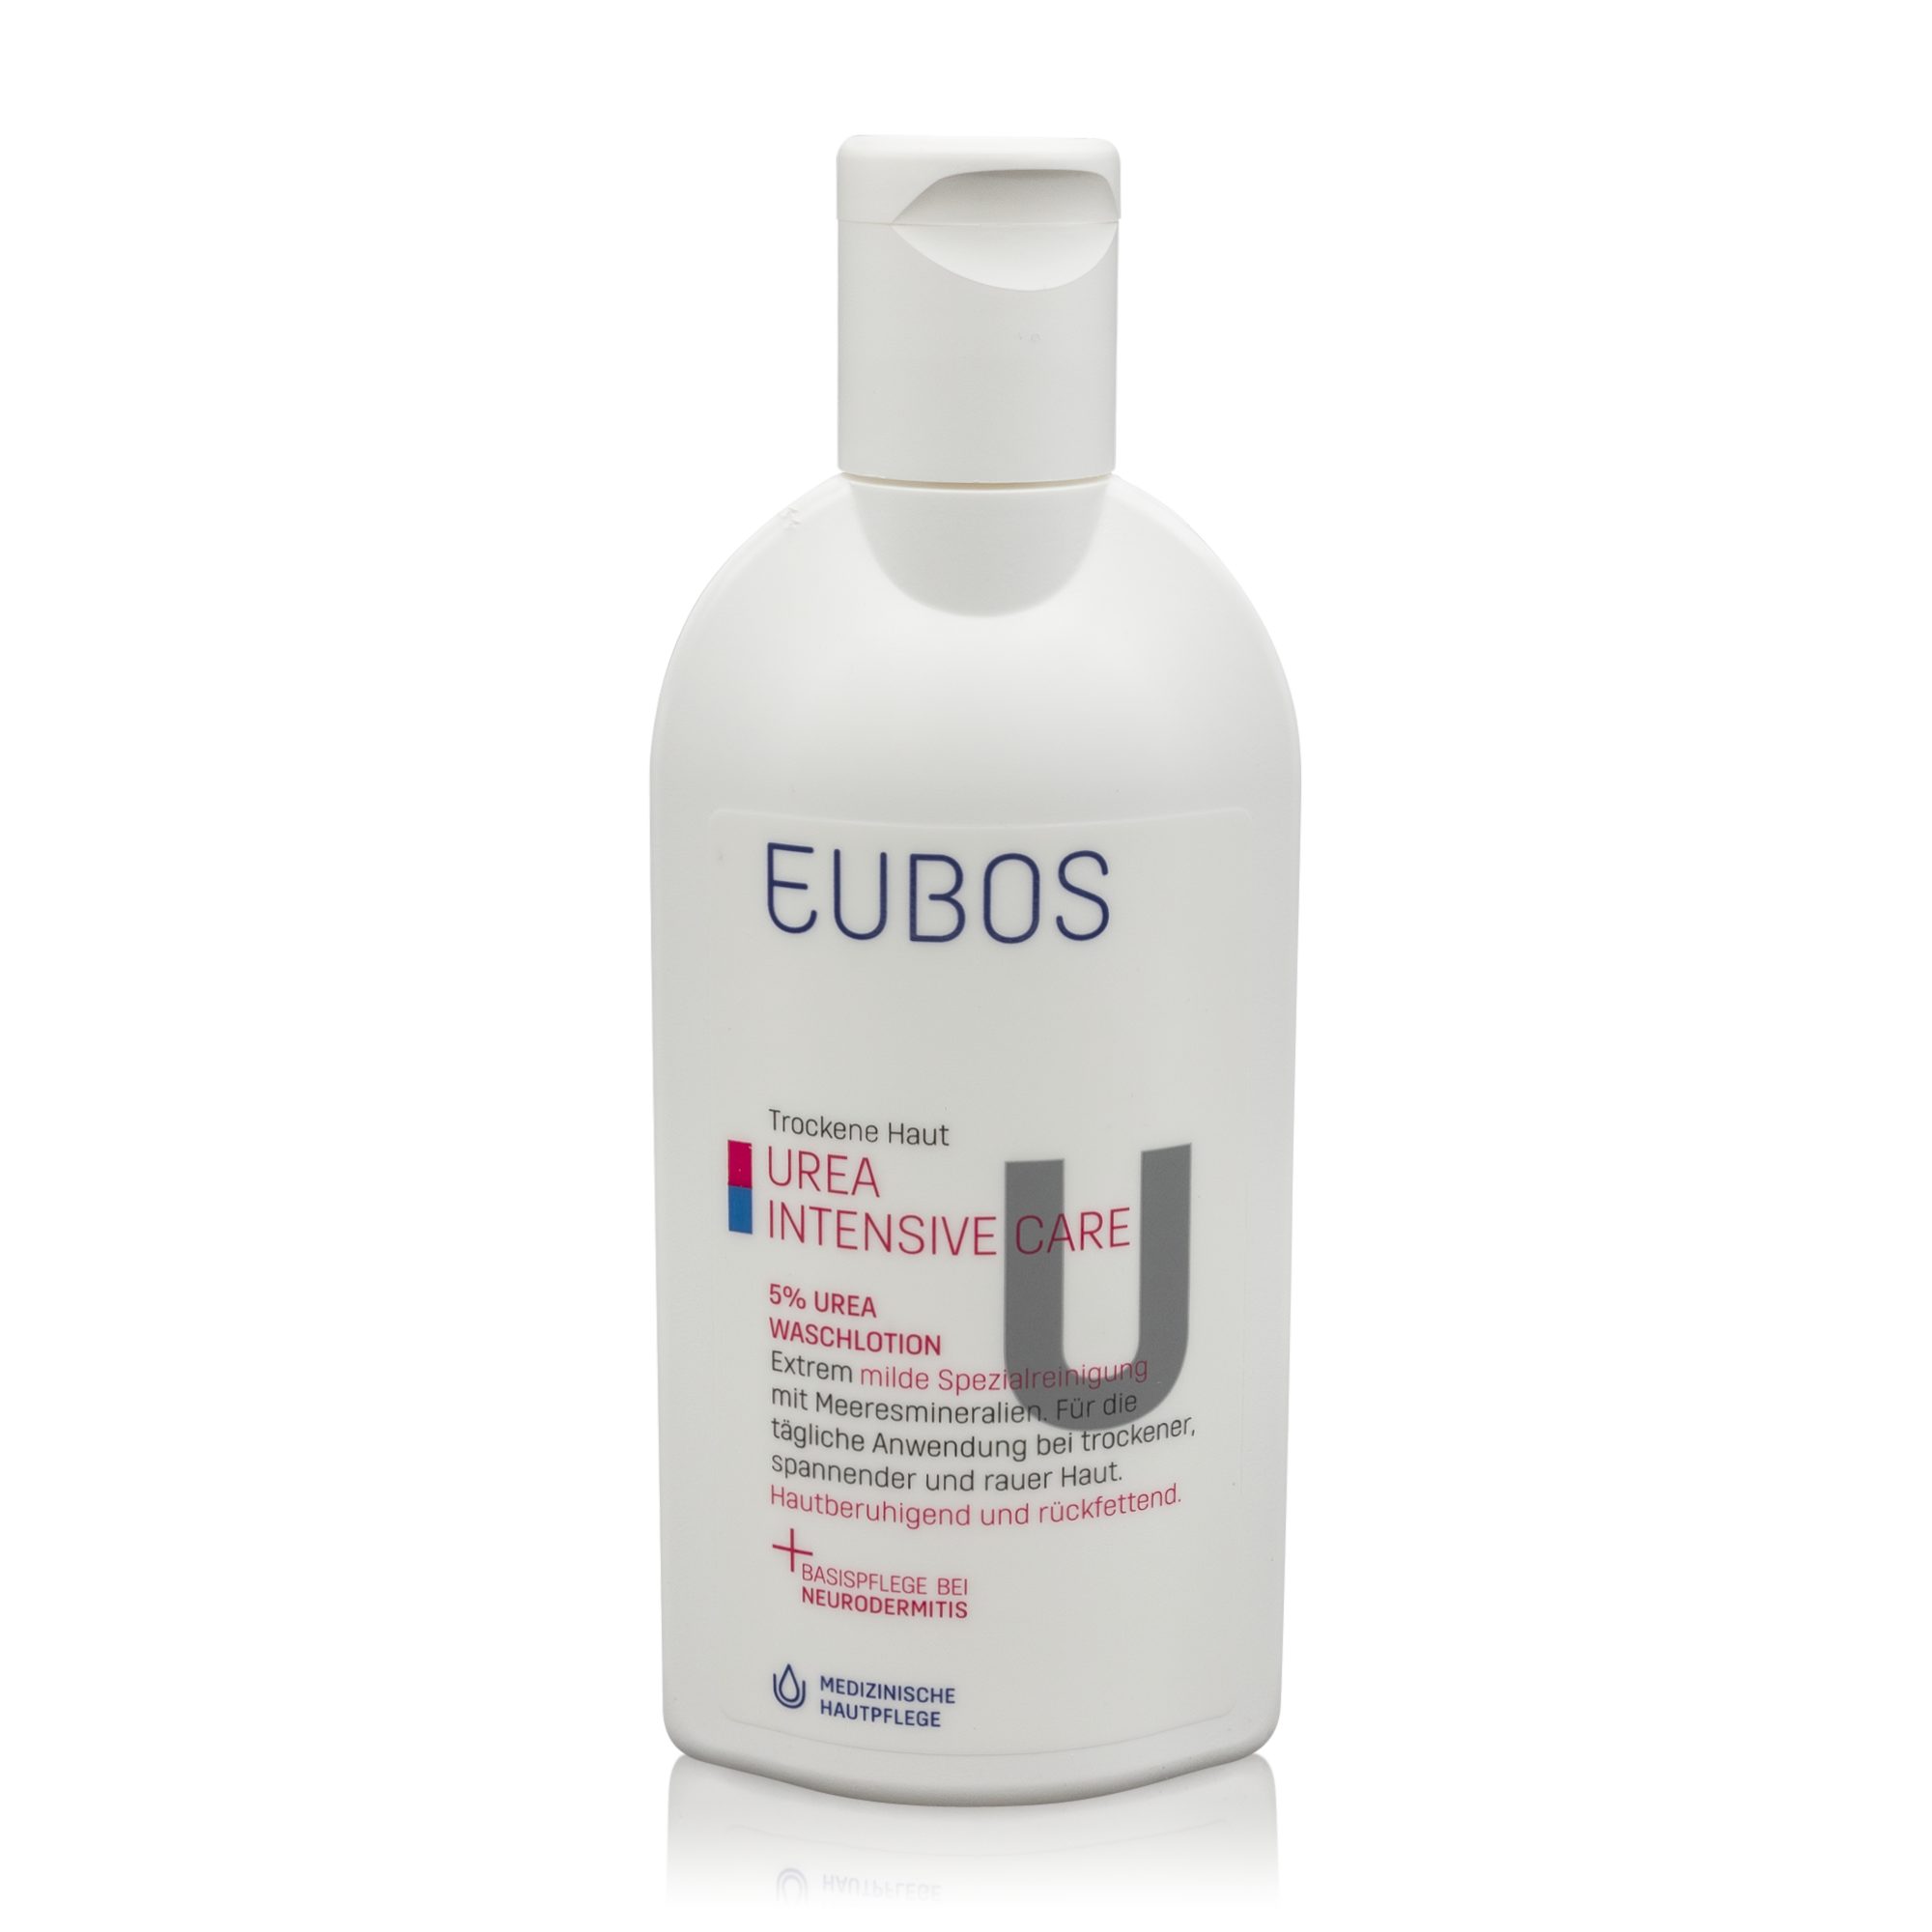 (200ml) Urea 5% Waschlotion Haut - Eubos Intensive EUBOS Urea Care Hautreinigungs-Set Trockene